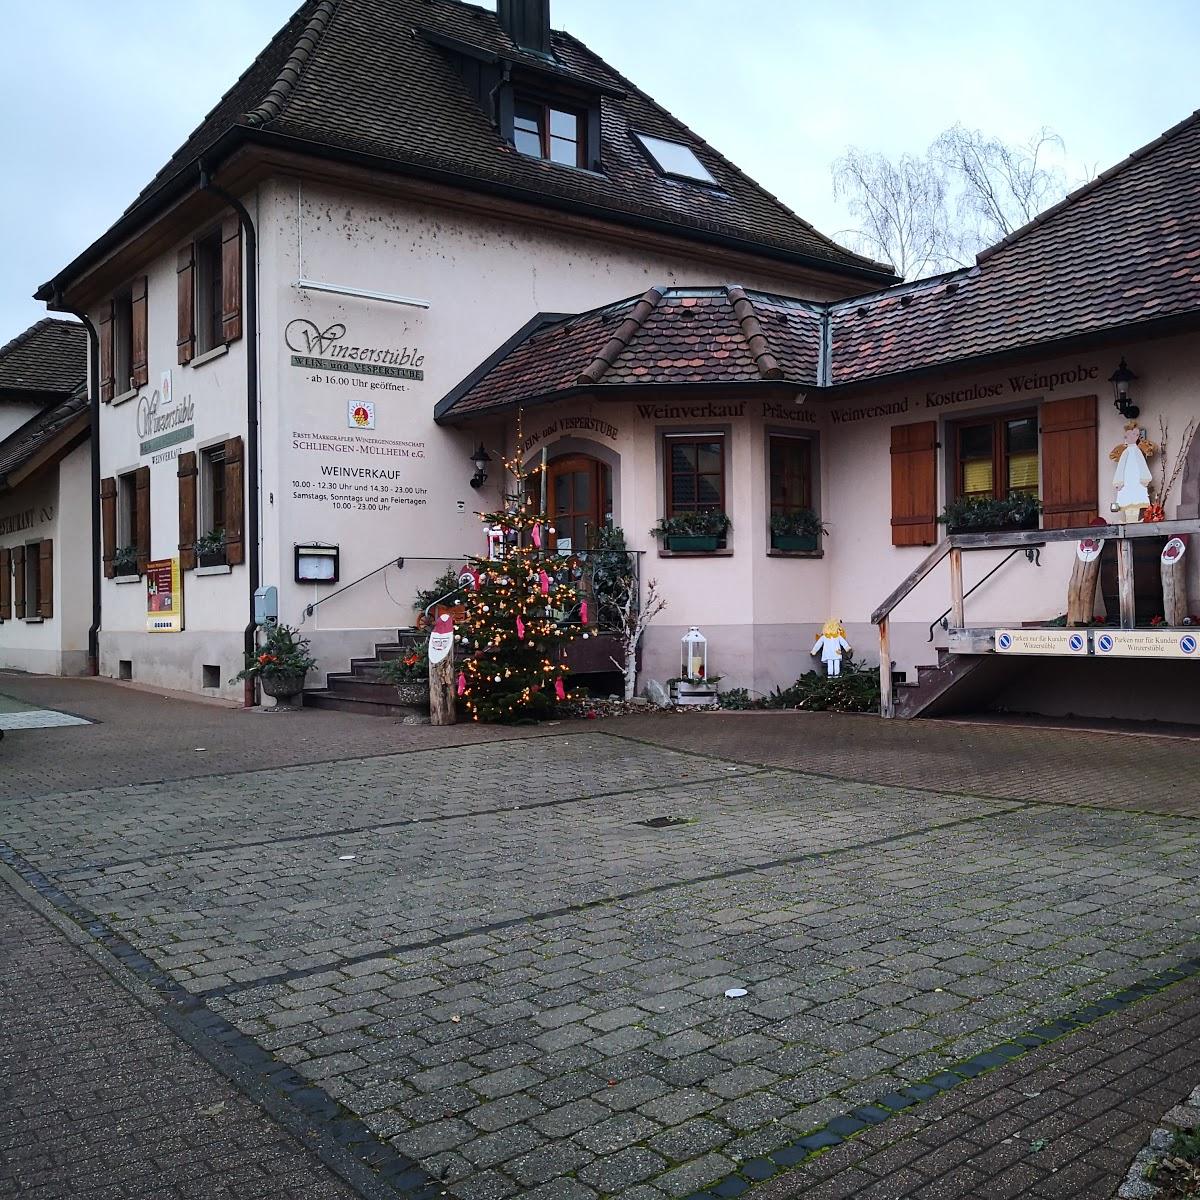 Restaurant "Kurhotel Markushof" in  Bellingen